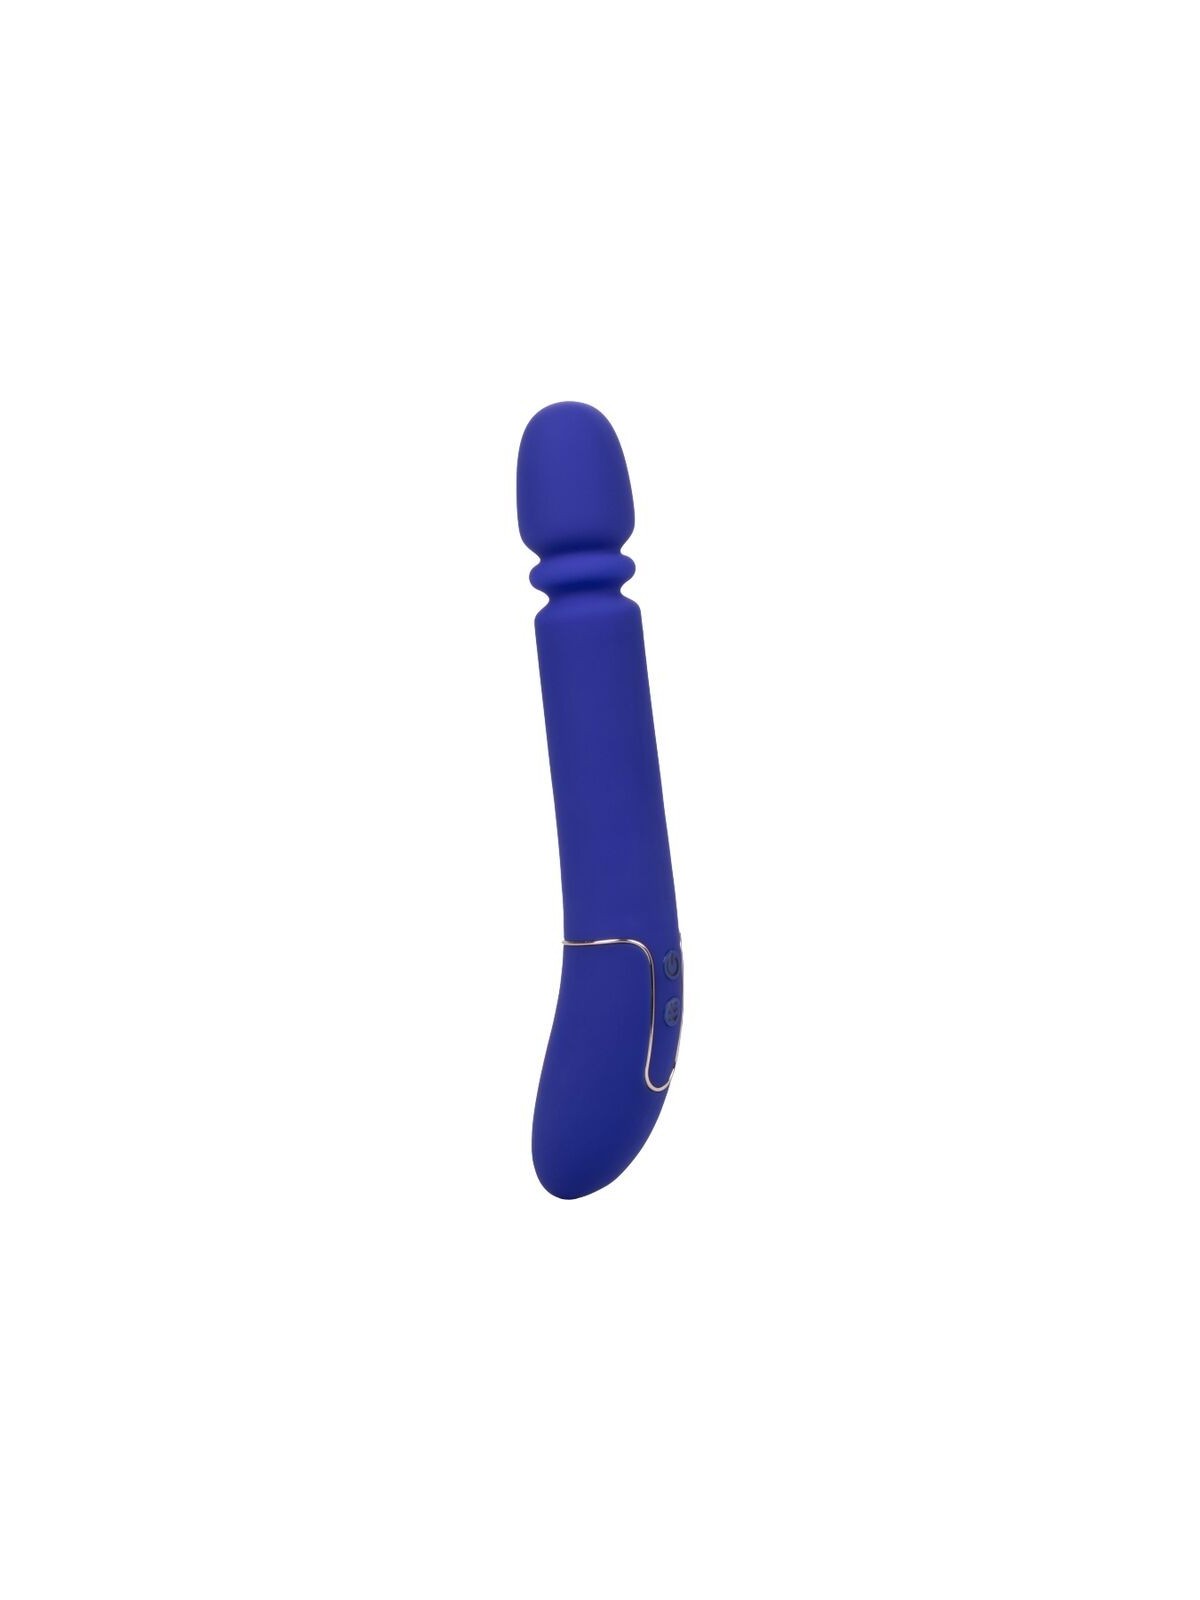 Calex Shameless Slim Thumper Masajeador Azul - Comprar Vibrador clásico California Exotics - Vibradores clásicos (1)